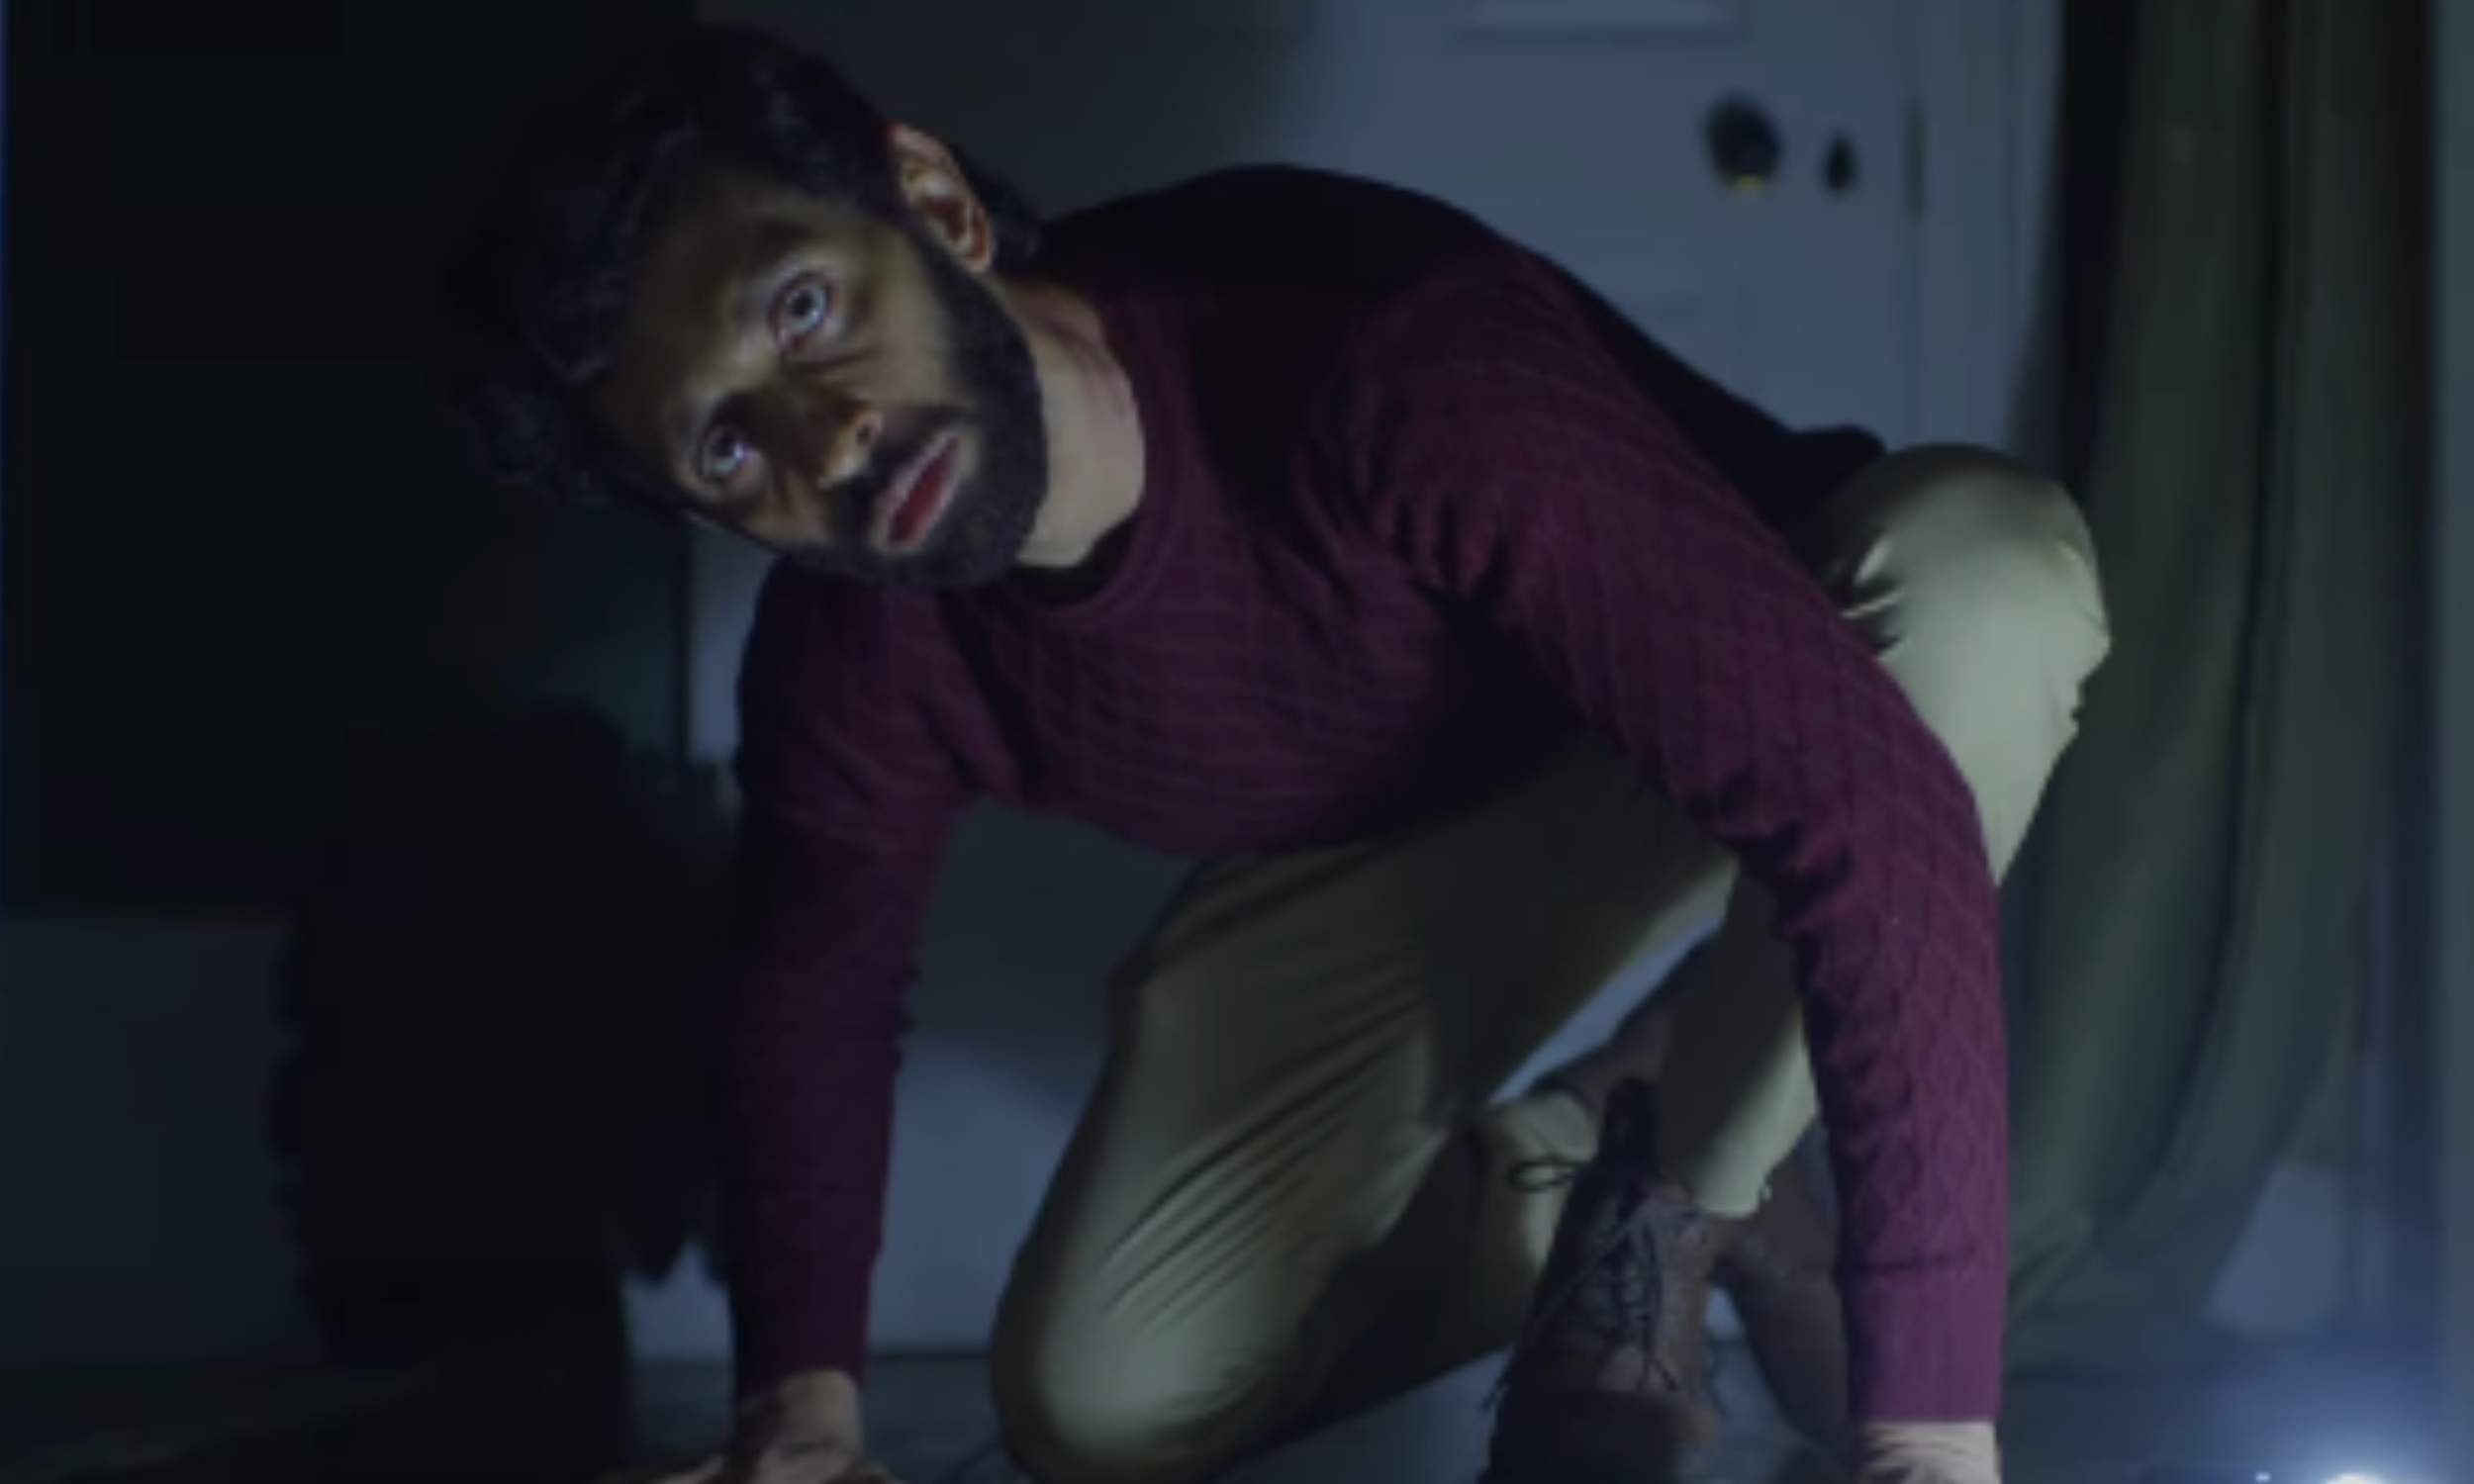 ASVINS trailer promises a thrilling psychological horror